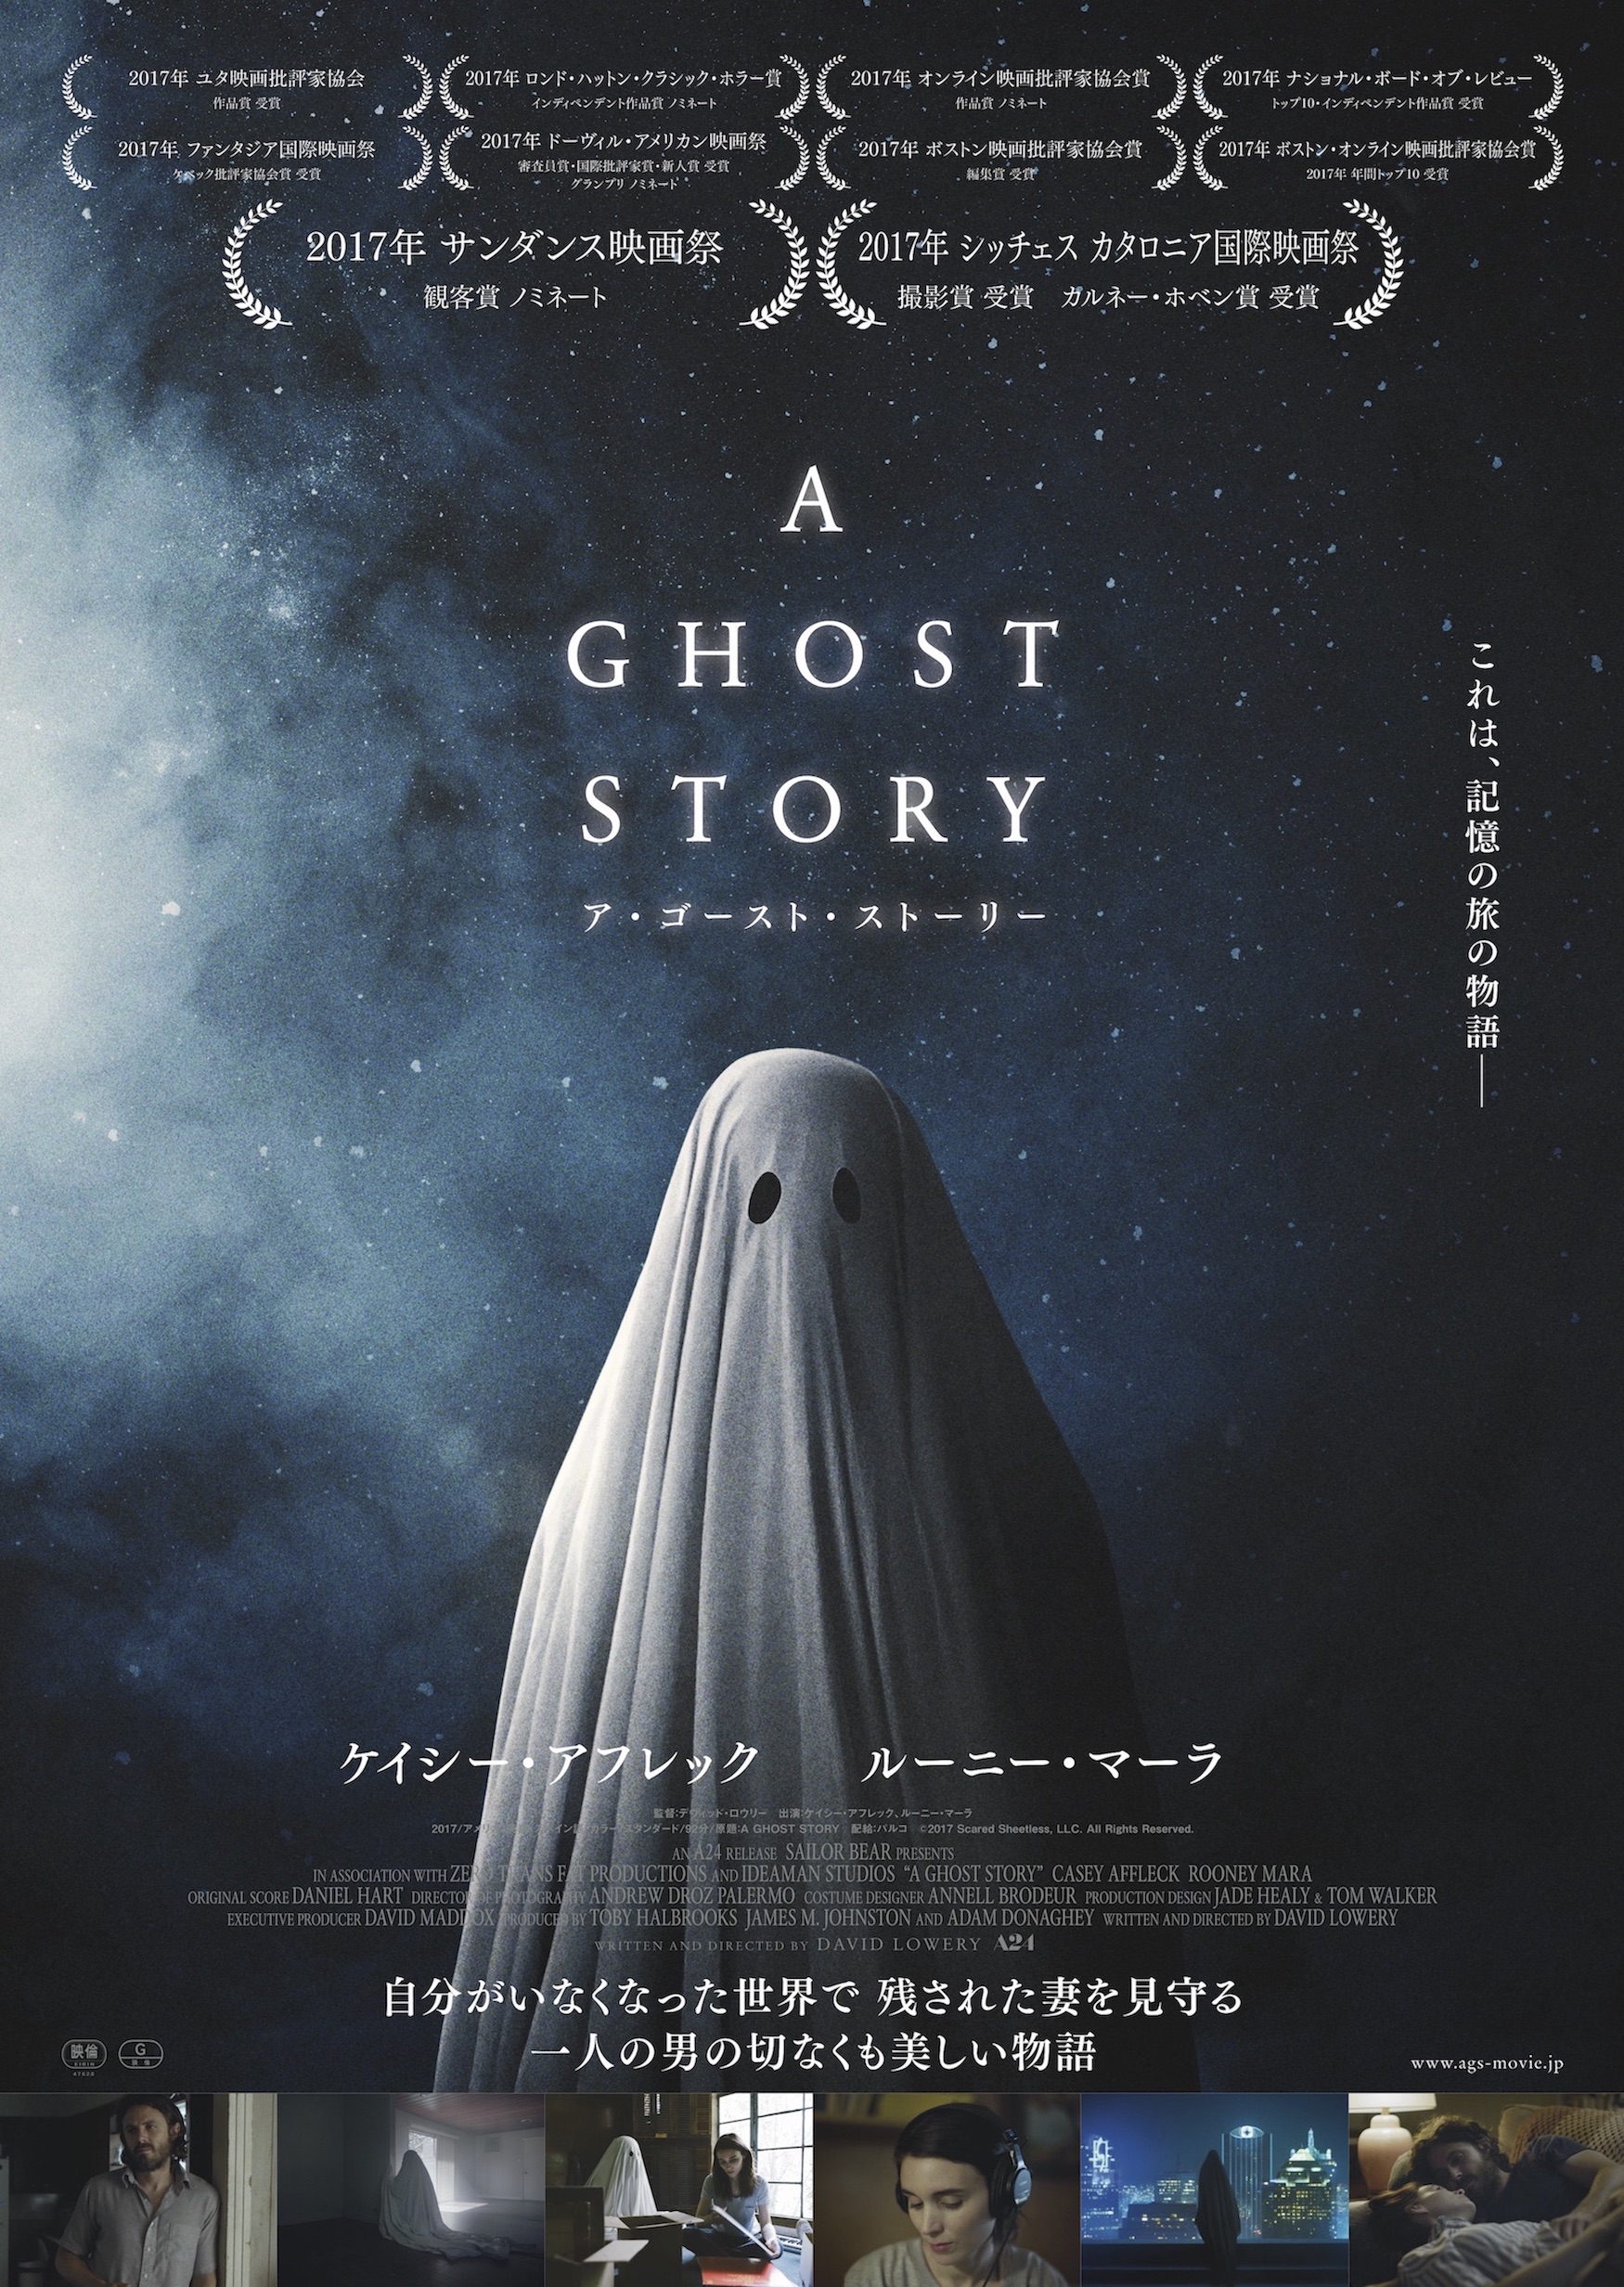 死んでもあなたを見守りたい 幽霊になった男の愛を描く ア ゴースト ストーリー 日本公開 ホラー通信